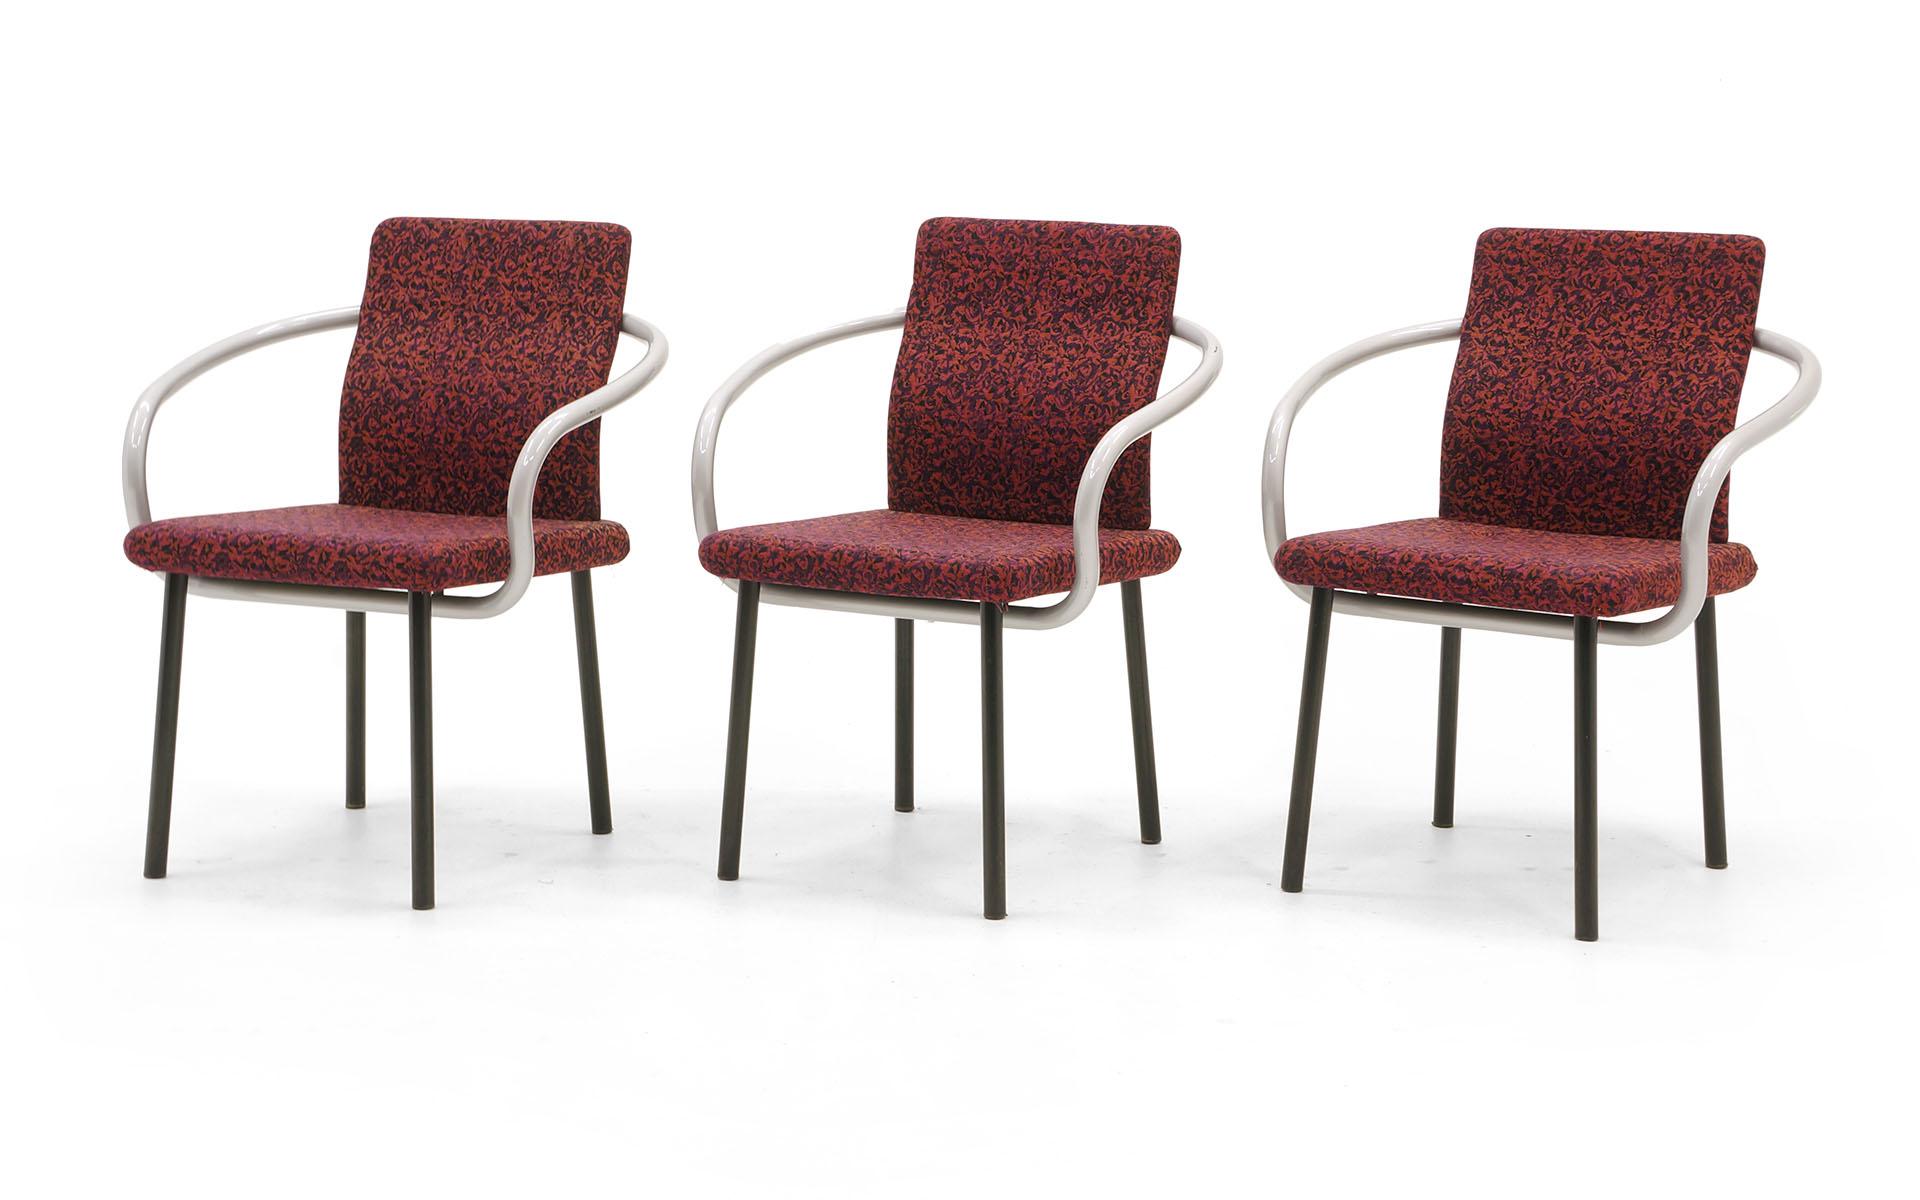 Ensemble de six chaises de salle à manger conçues par Ettore Sottsass, le fondateur du groupe Memphis, Milan, Italie. Ces chaises sont en très bon état, entièrement d'origine. Construction très robuste, avec des accoudoirs en bois courbé d'une seule